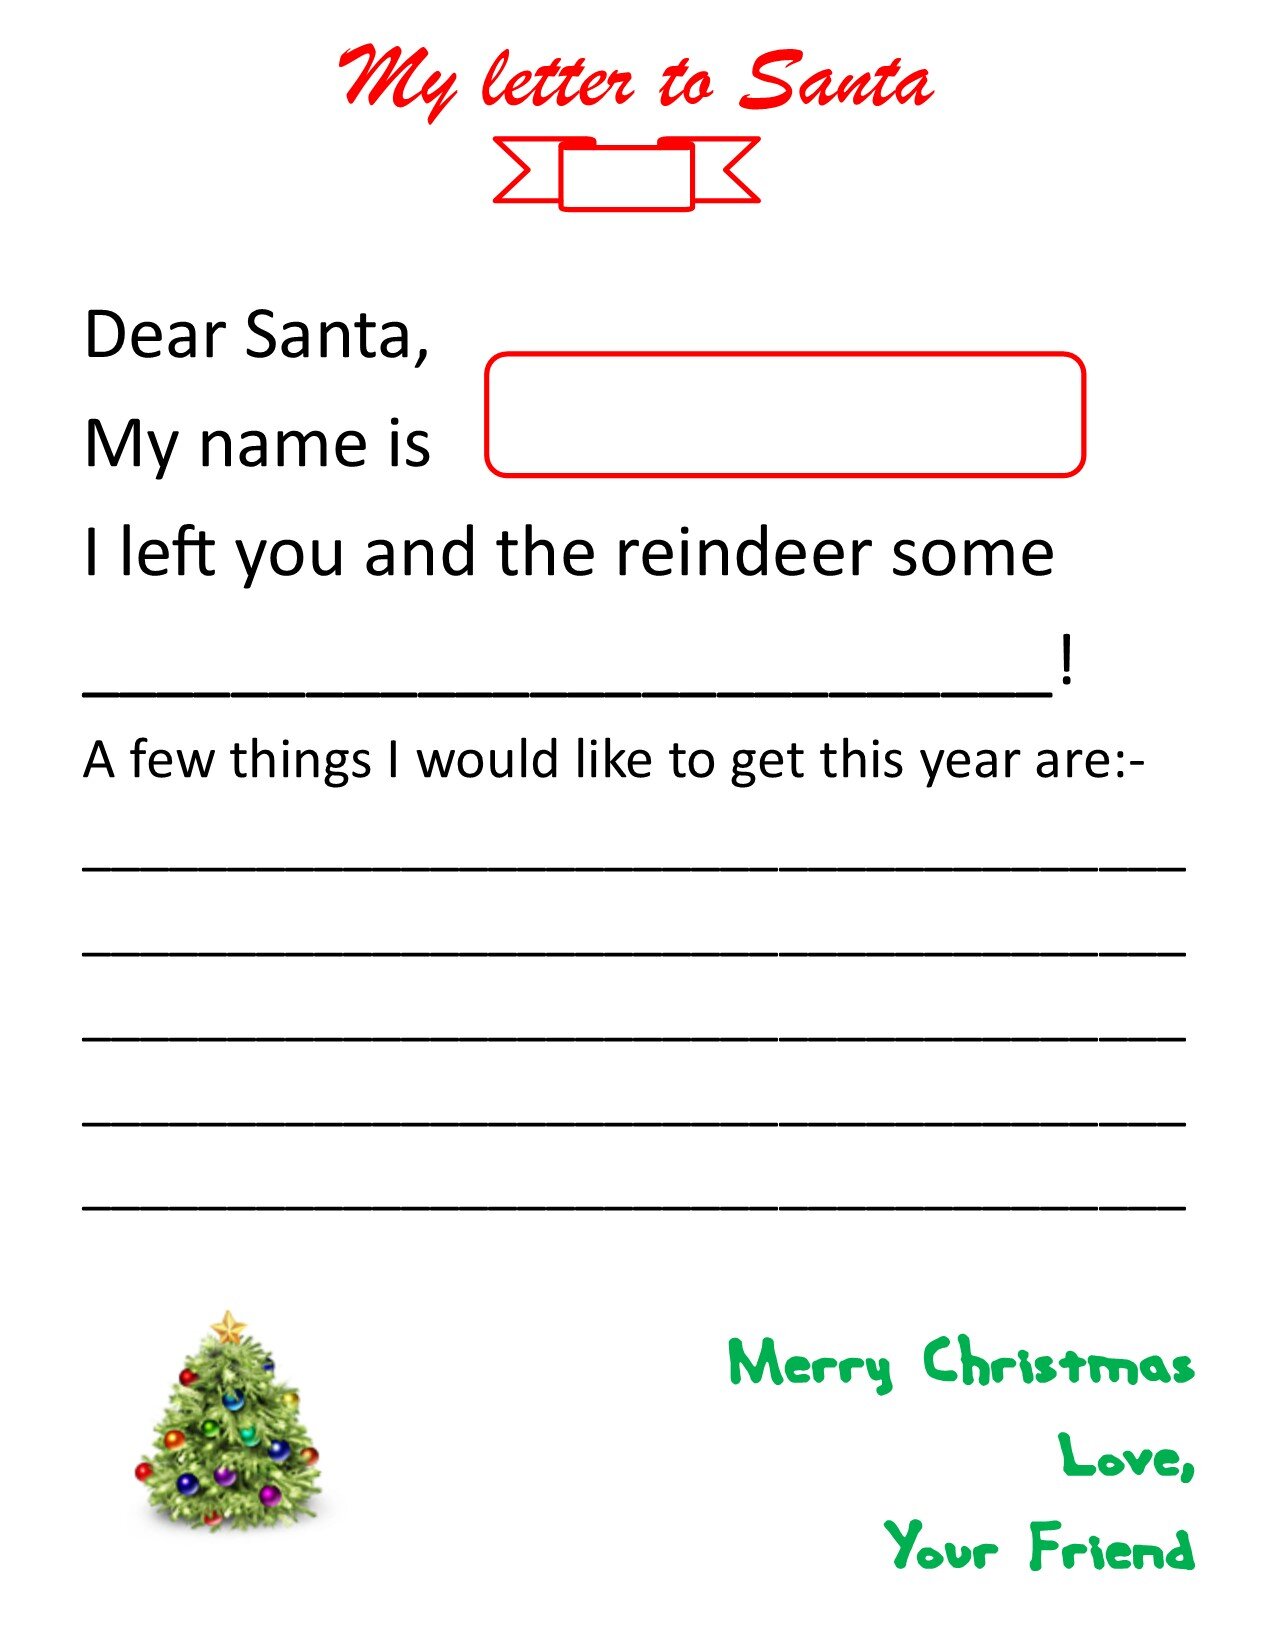 Letters to Santa 11.jpg